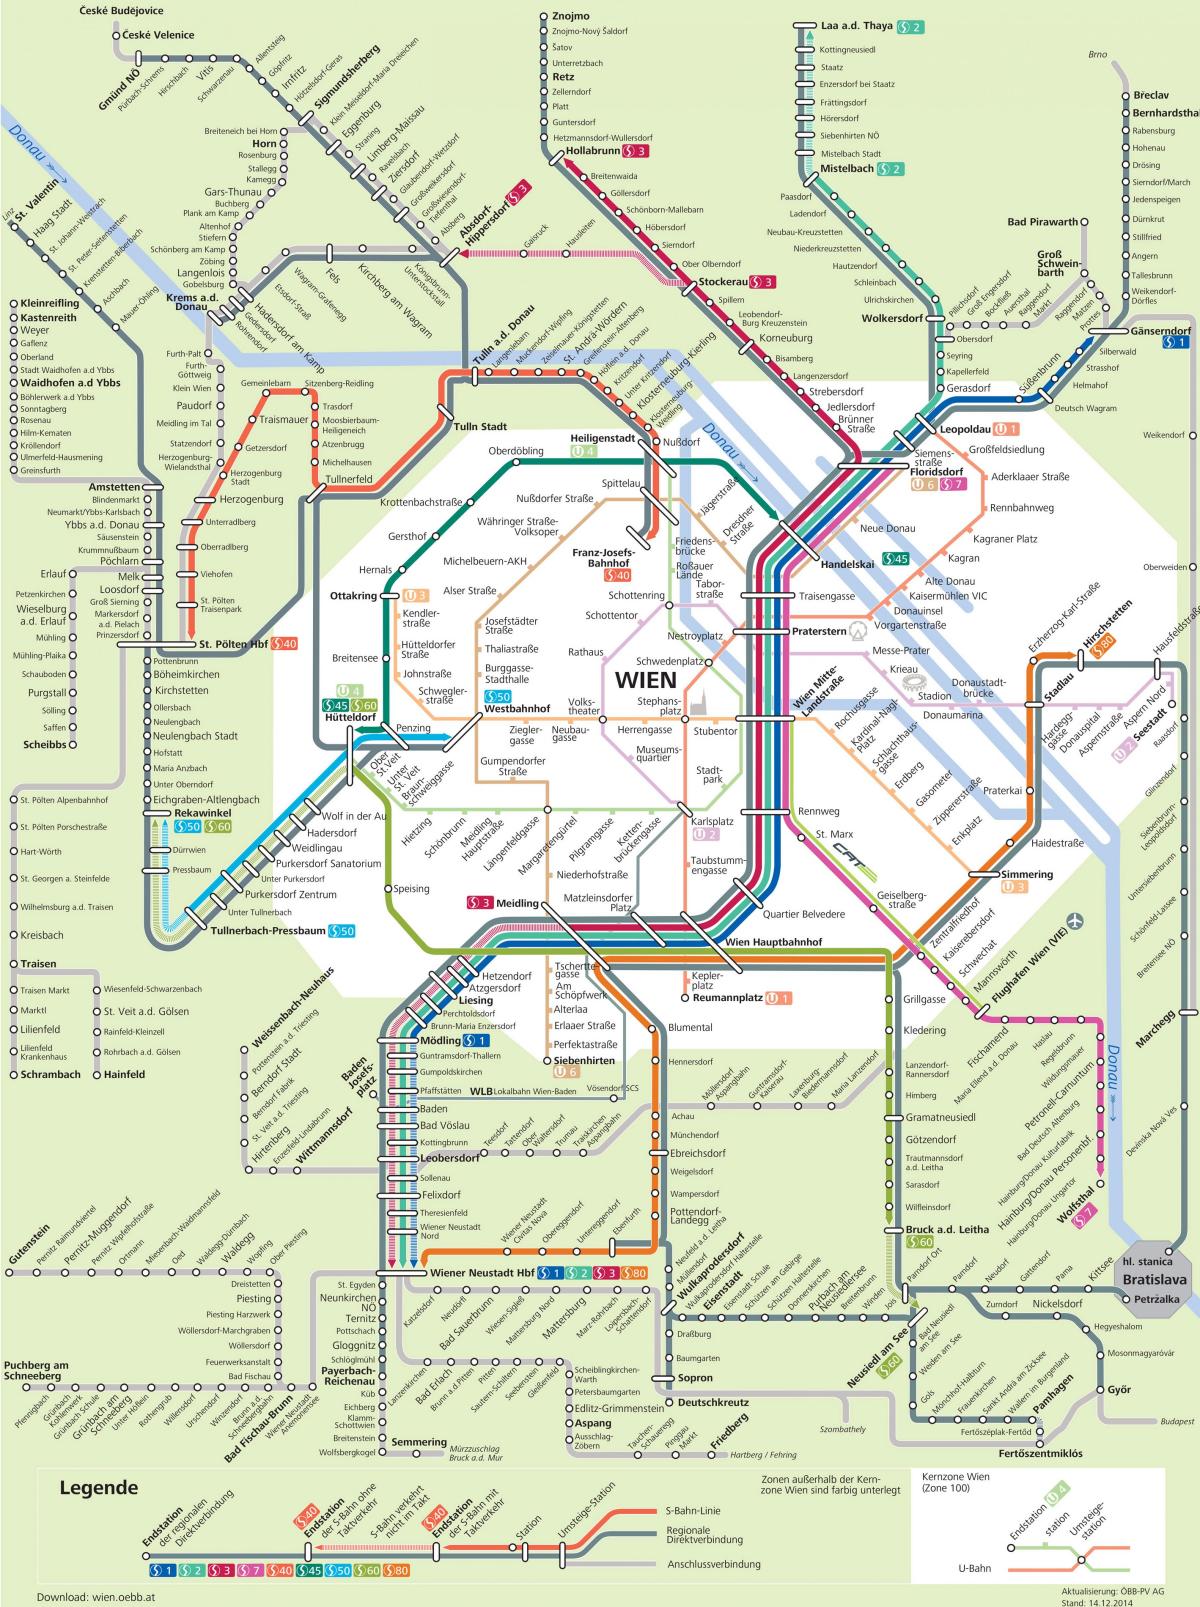 ვენის light rail რუკა